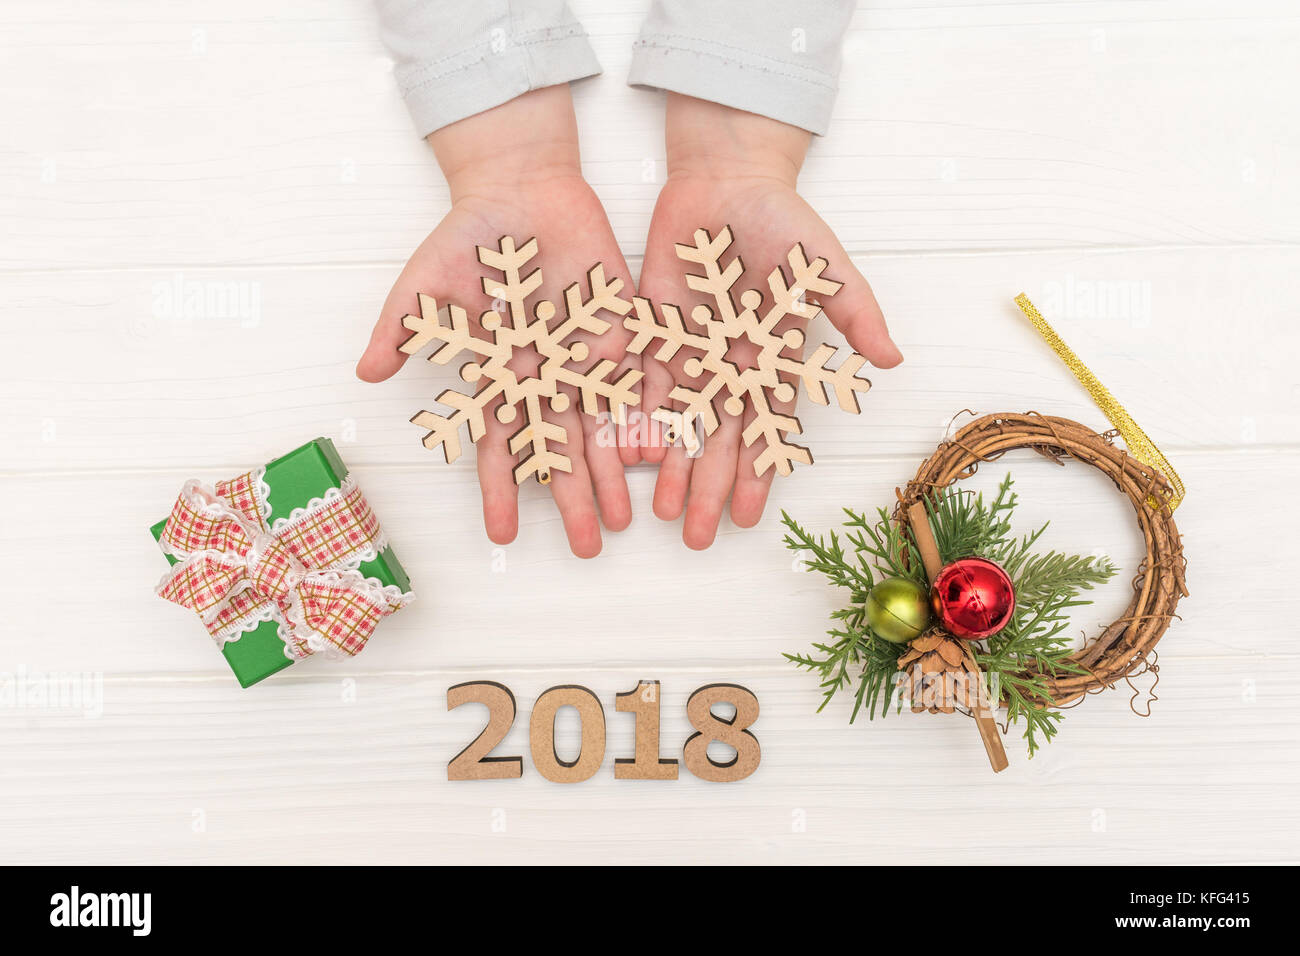 Weihnachten Kalender auf weißem Hintergrund. Child's Hände, die Christmas Ball in der Nähe von geschenkboxen auf weißen Tisch Stockfoto